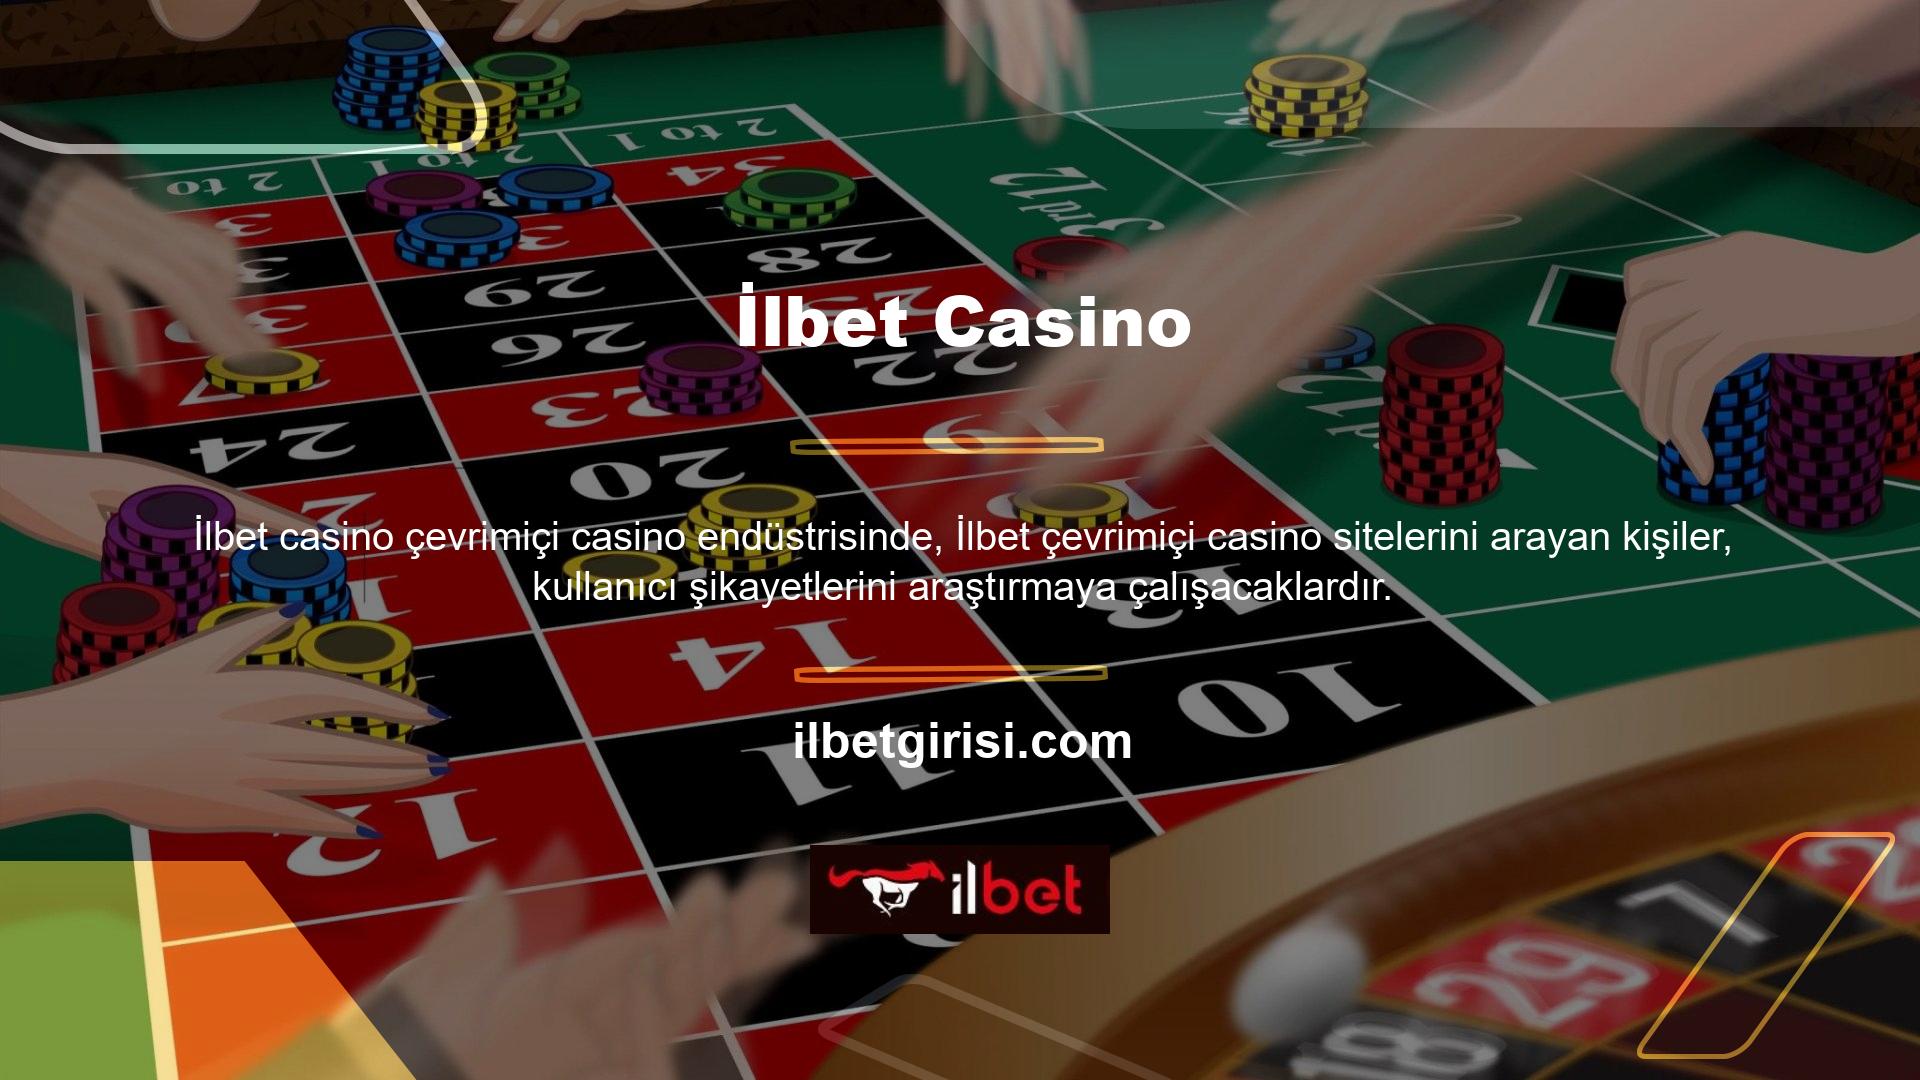 İlbet, her zaman Türkiye pazarında en az şikayet alan çevrimiçi casino sitesi olmuştur